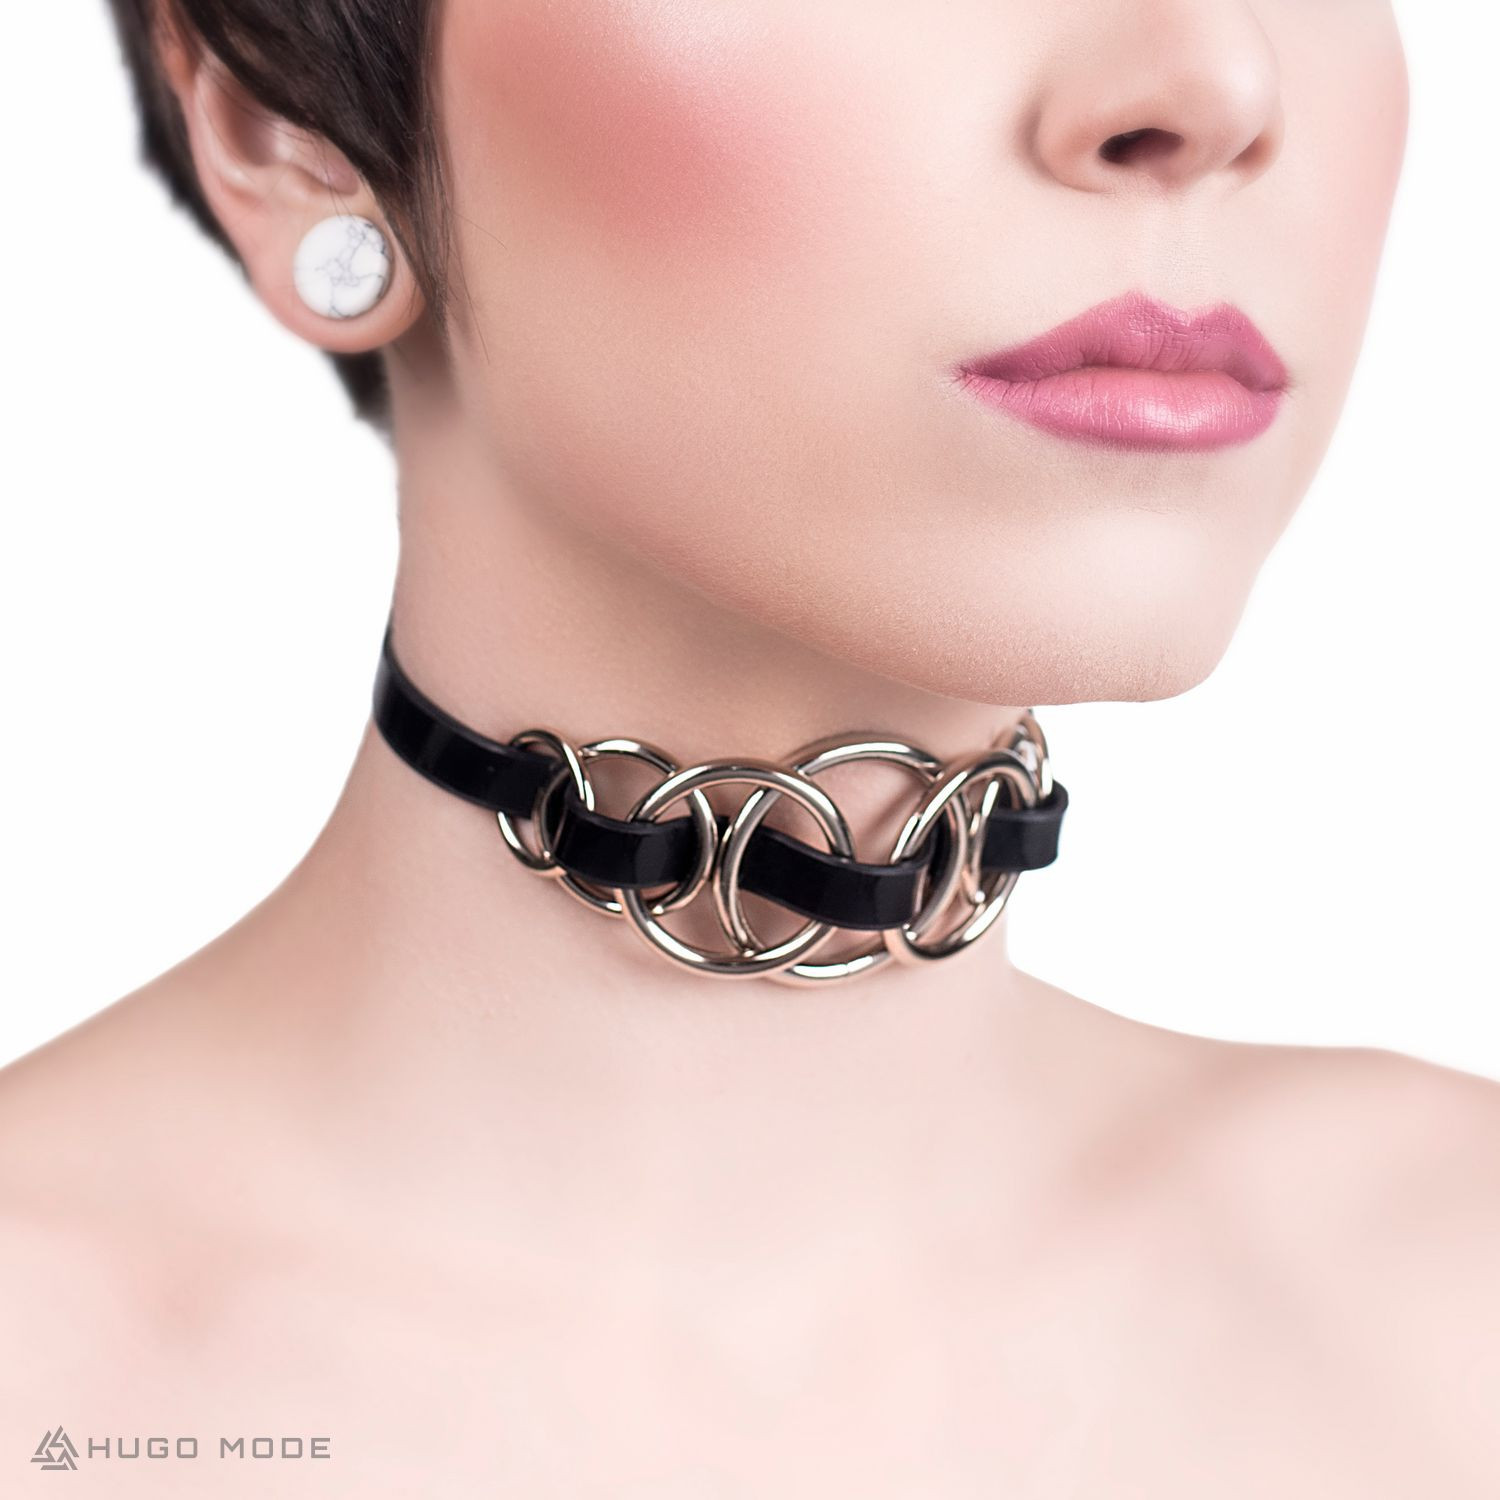 Ein dünnes Choker Halsband verziert mit verflochtenen Ringen.